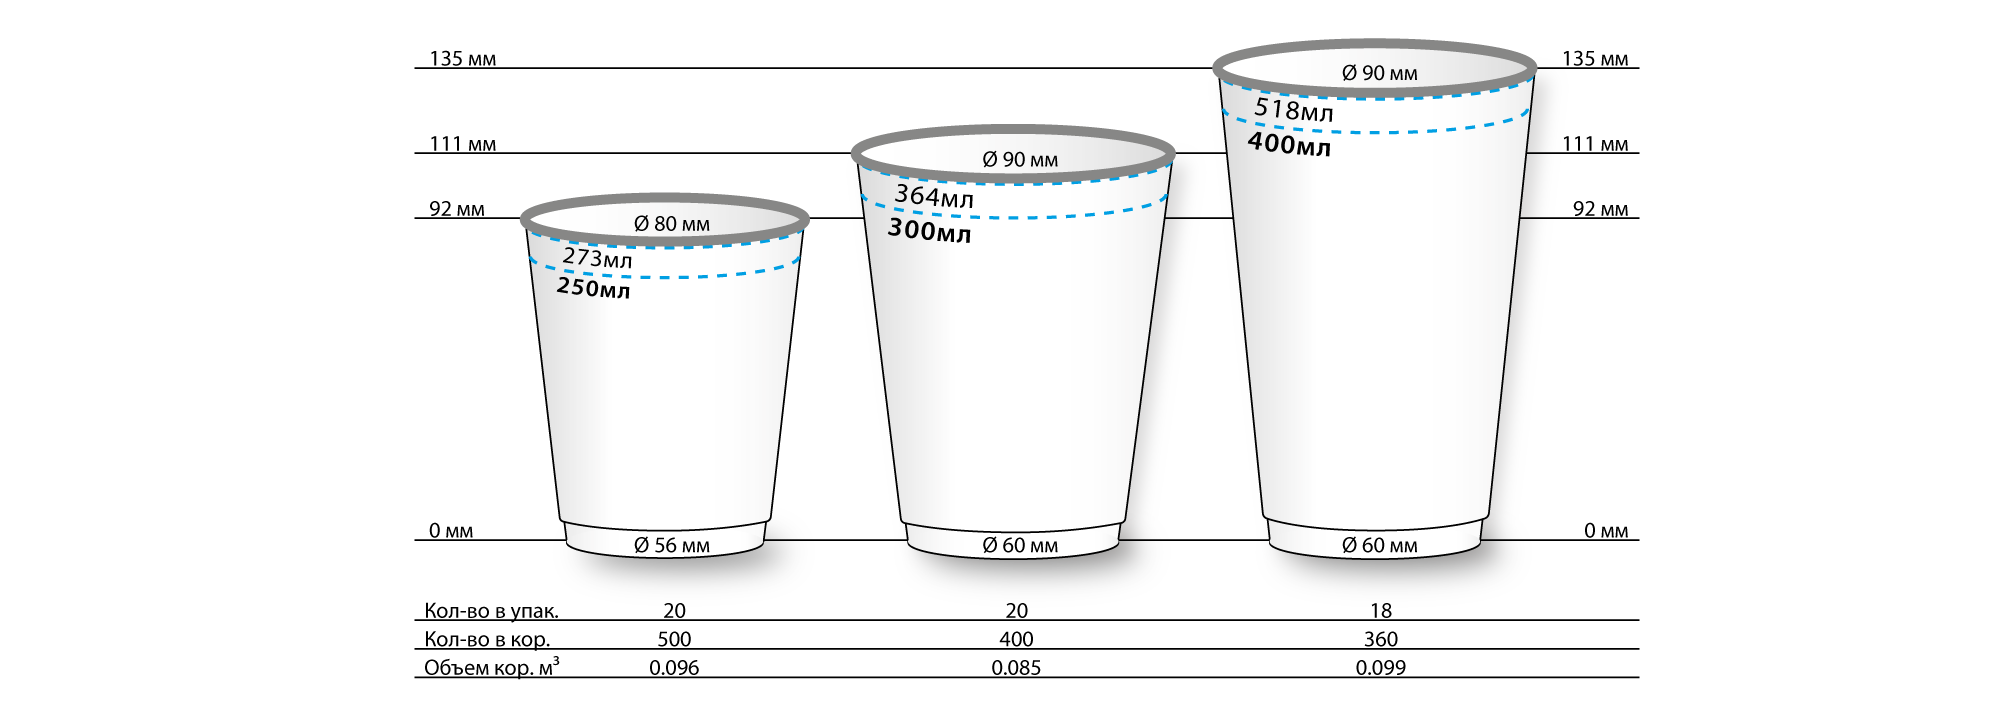 5 3 75 300. Размеры стаканчиков для кофе. Размер стакана. Размеры бумажных стаканчиков. Размеры стаканов для кофе.